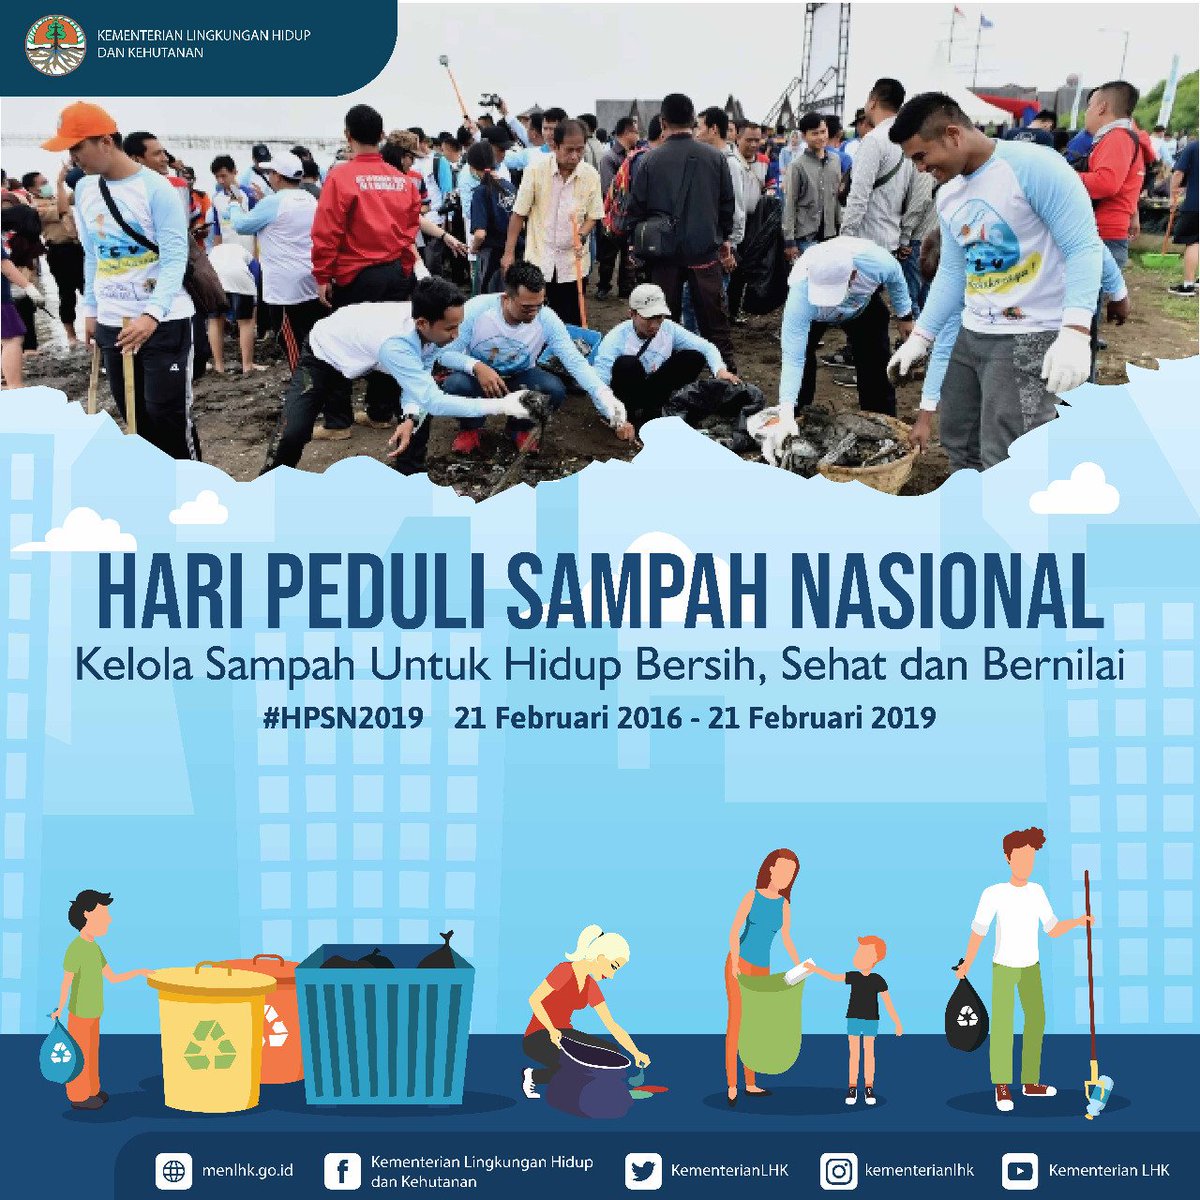 Sobat Hijau, mari bersama kita budayakan gerakan kelola bersih sampah dimanapun kita berada, untuk mewujudkan Indonesia yang bersih, sehat, dan bernilai.

Selamat Hari Peduli Sampah Nasional 2019. 😊💪

#HPSN2019
#HariPeduliSampah
#KLHK